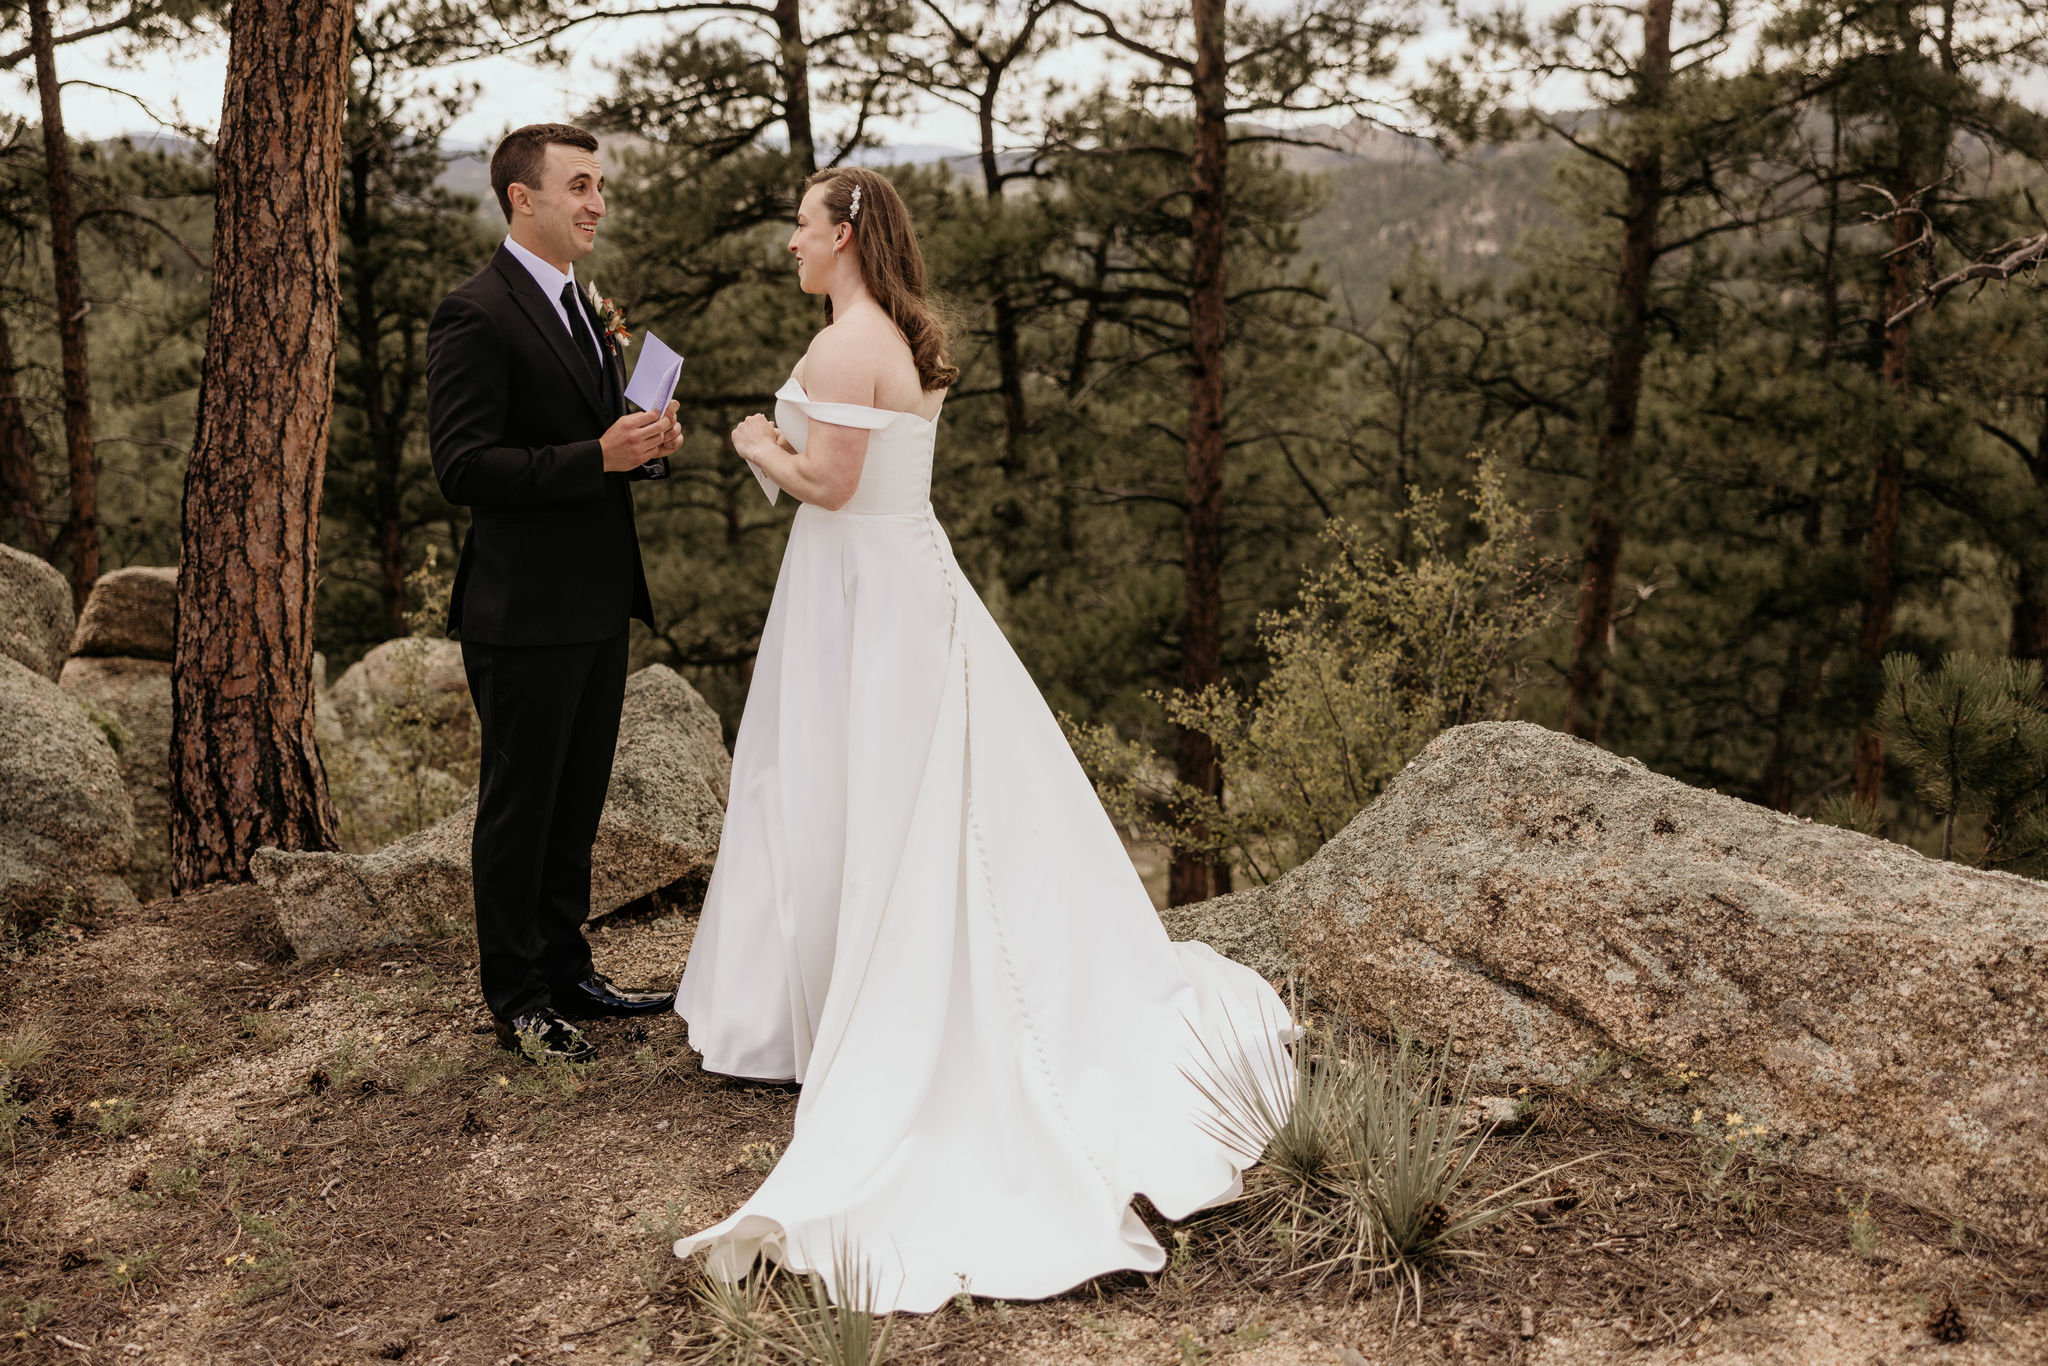 bride and groom say wedding vows at colorado elopement location.